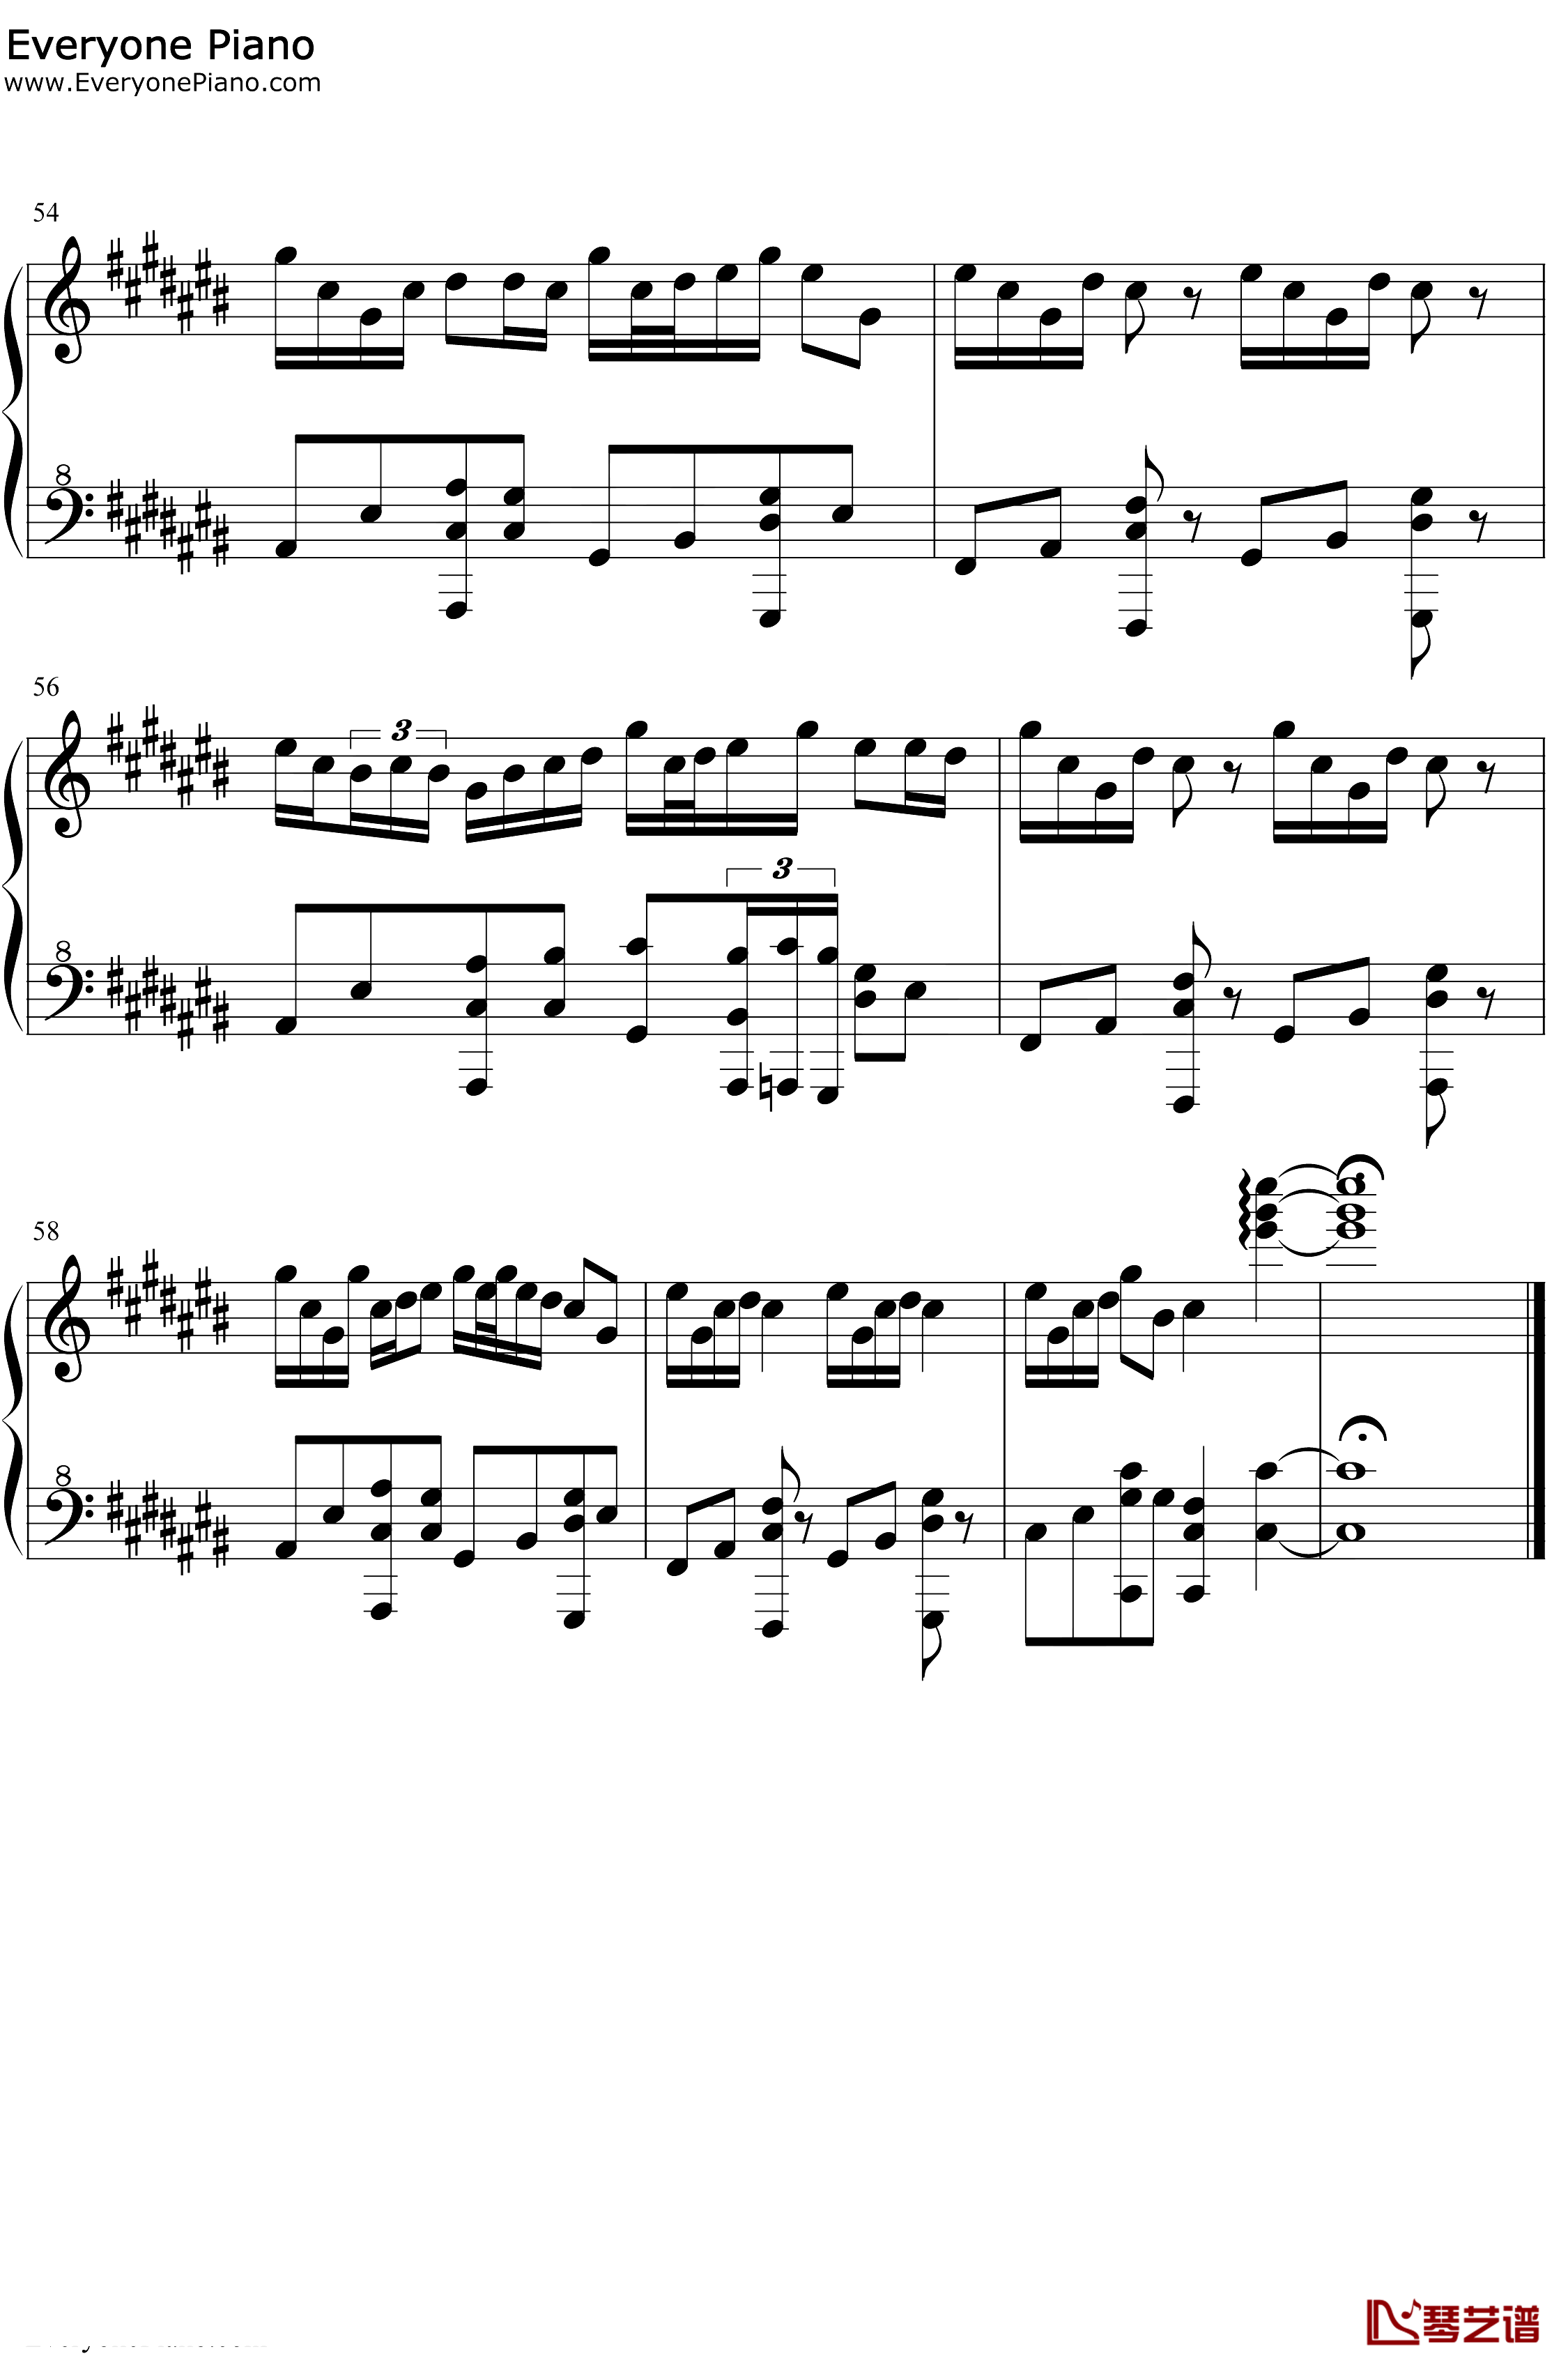 星茶会钢琴谱-灰澈-轻快的钢琴RB曲5